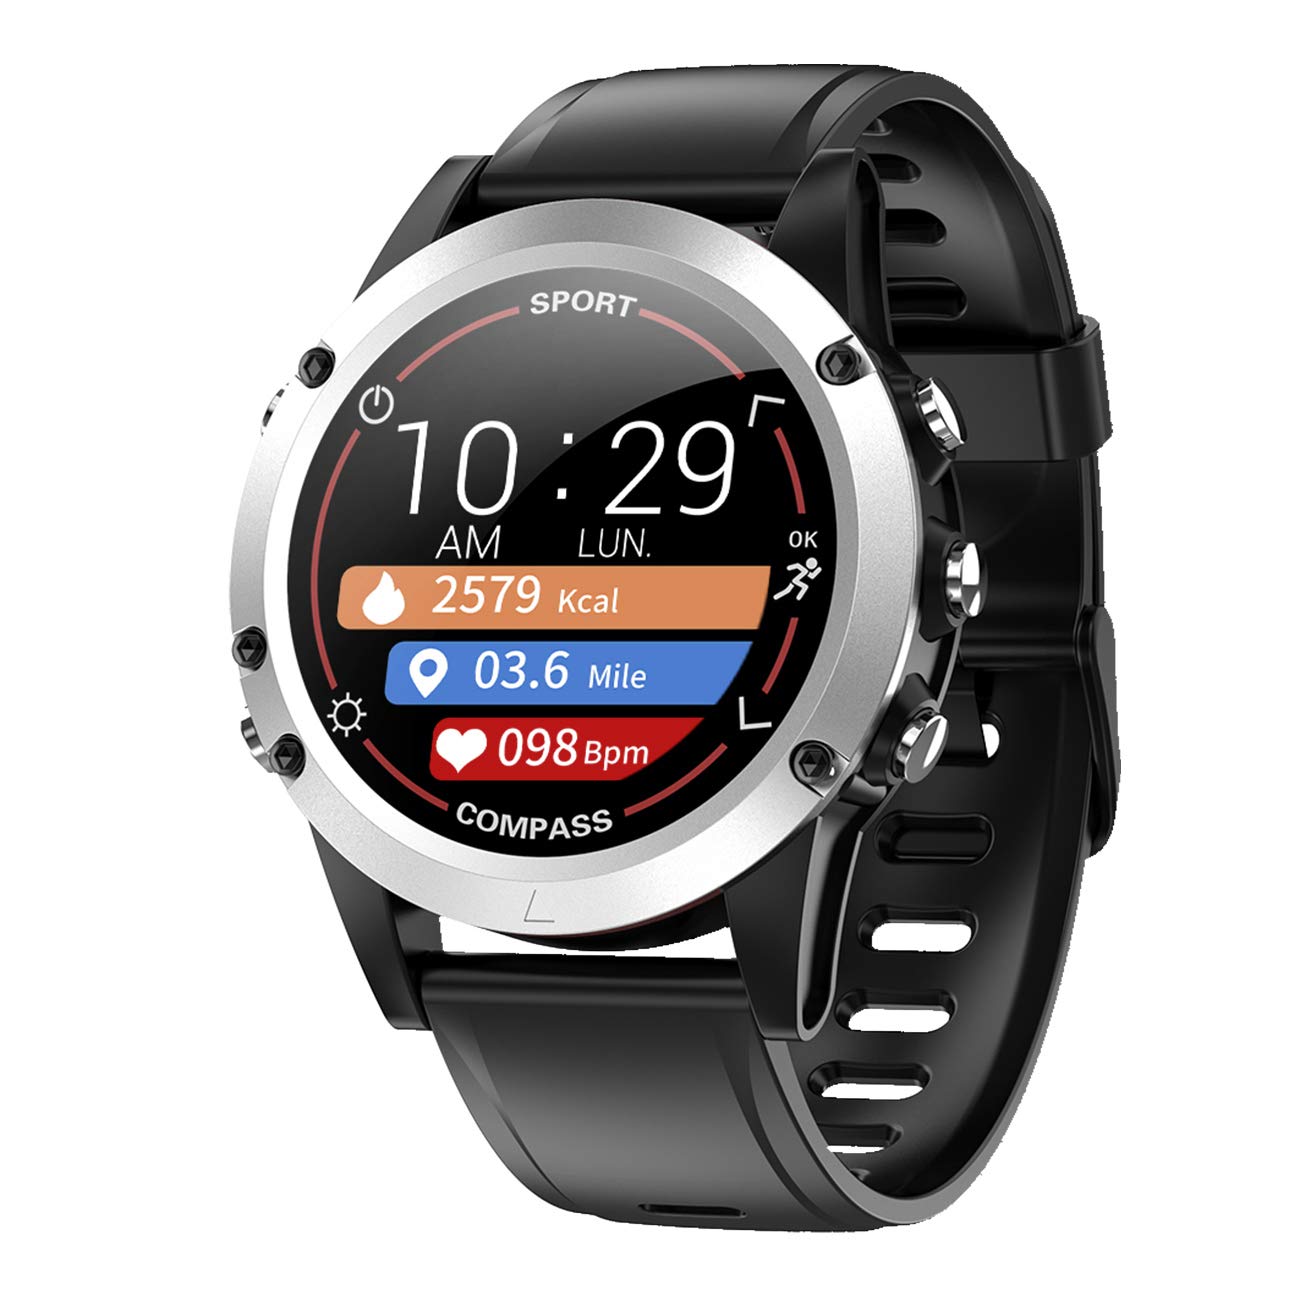 Fitnesstracker mit Herzfrequenz Puls Blutdruck Messung Kompass Schlaf Schrittzahl Farbdisplay Smartwatch Armband Uhr - 9714/7